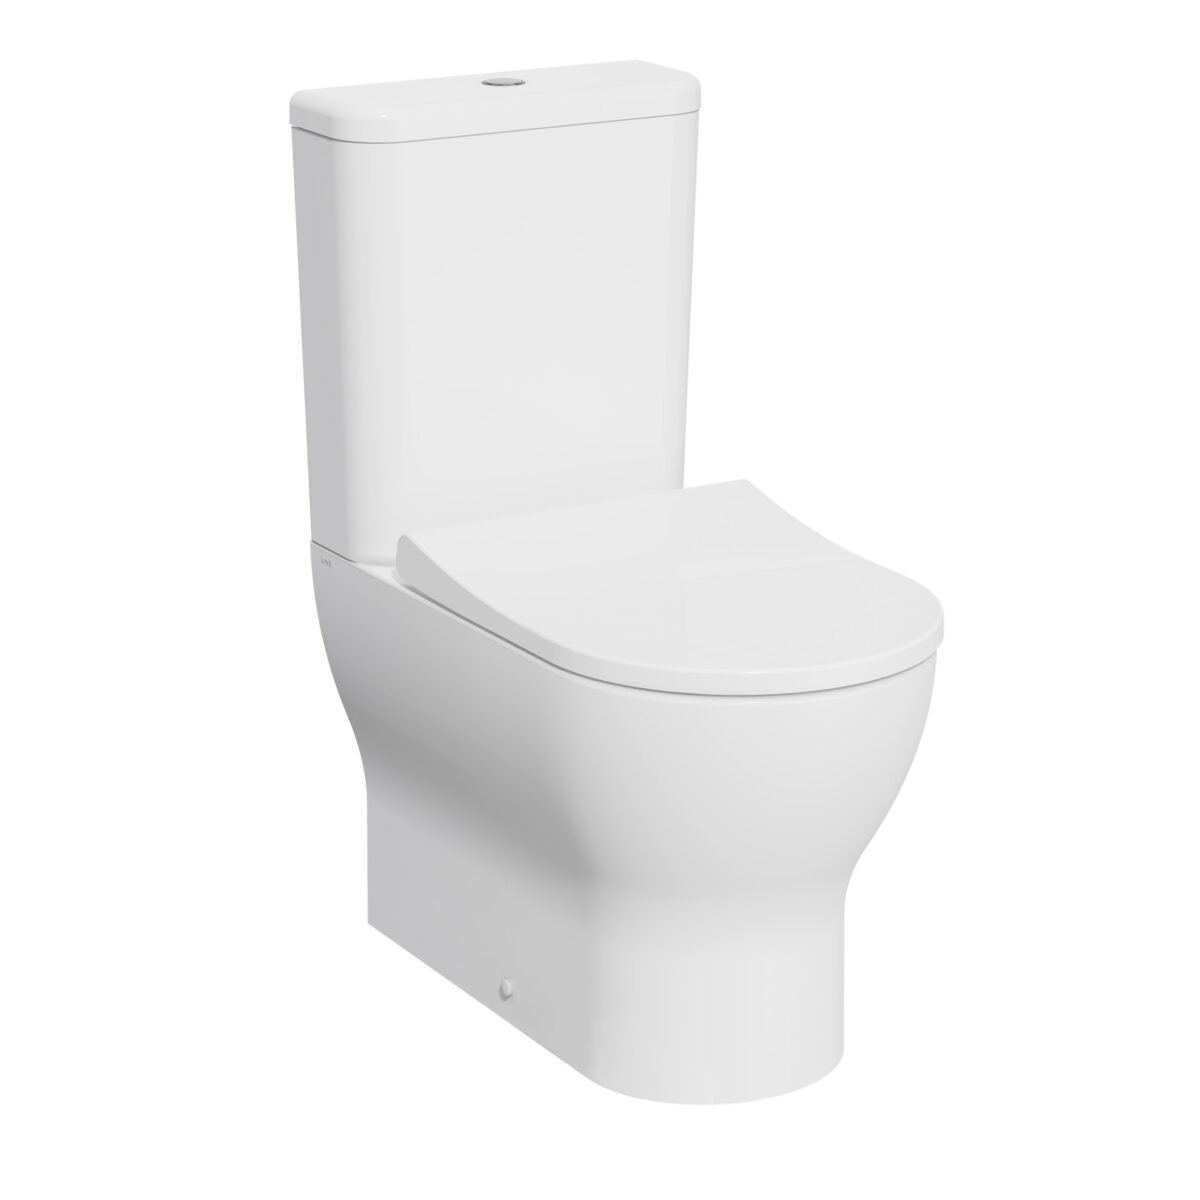 EKLIPSE ROUND - Premier Tiles & Bathrooms - Toilets - EK012RO